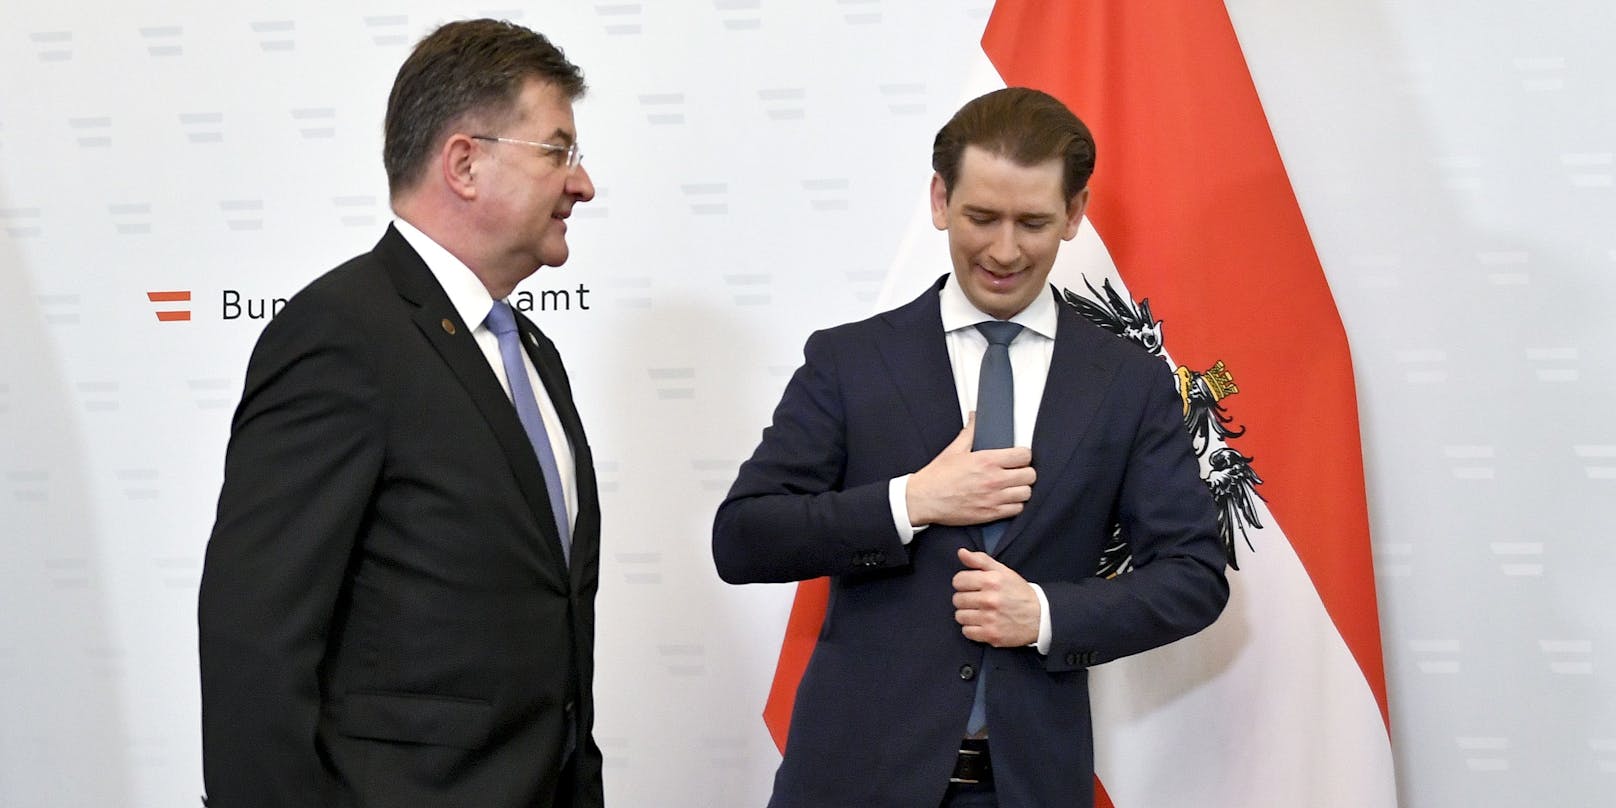 Der EU-Sonderbeauftragte Miroslav Lajcak und Österreichs Bundeskanzler Sebastian Kurz (ÖVP) am Freitag im Rahmen der Westbalkankonferenz in Wien.